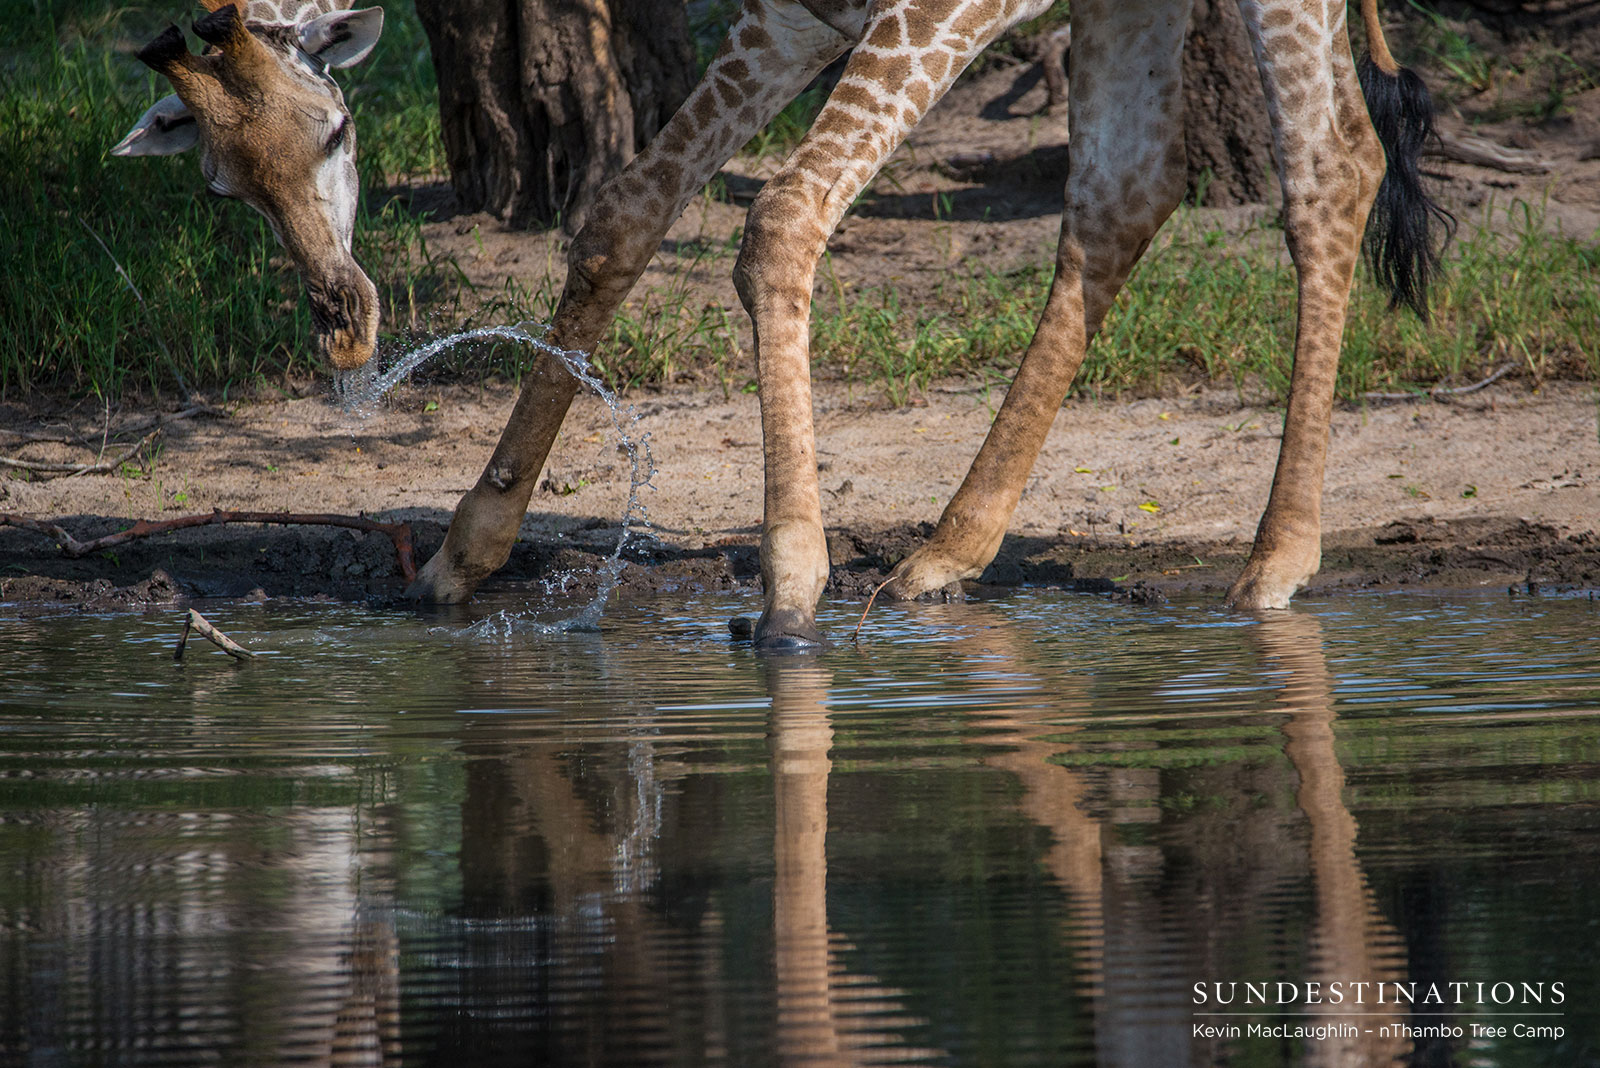 Giraffe at nThambo Tree Camp